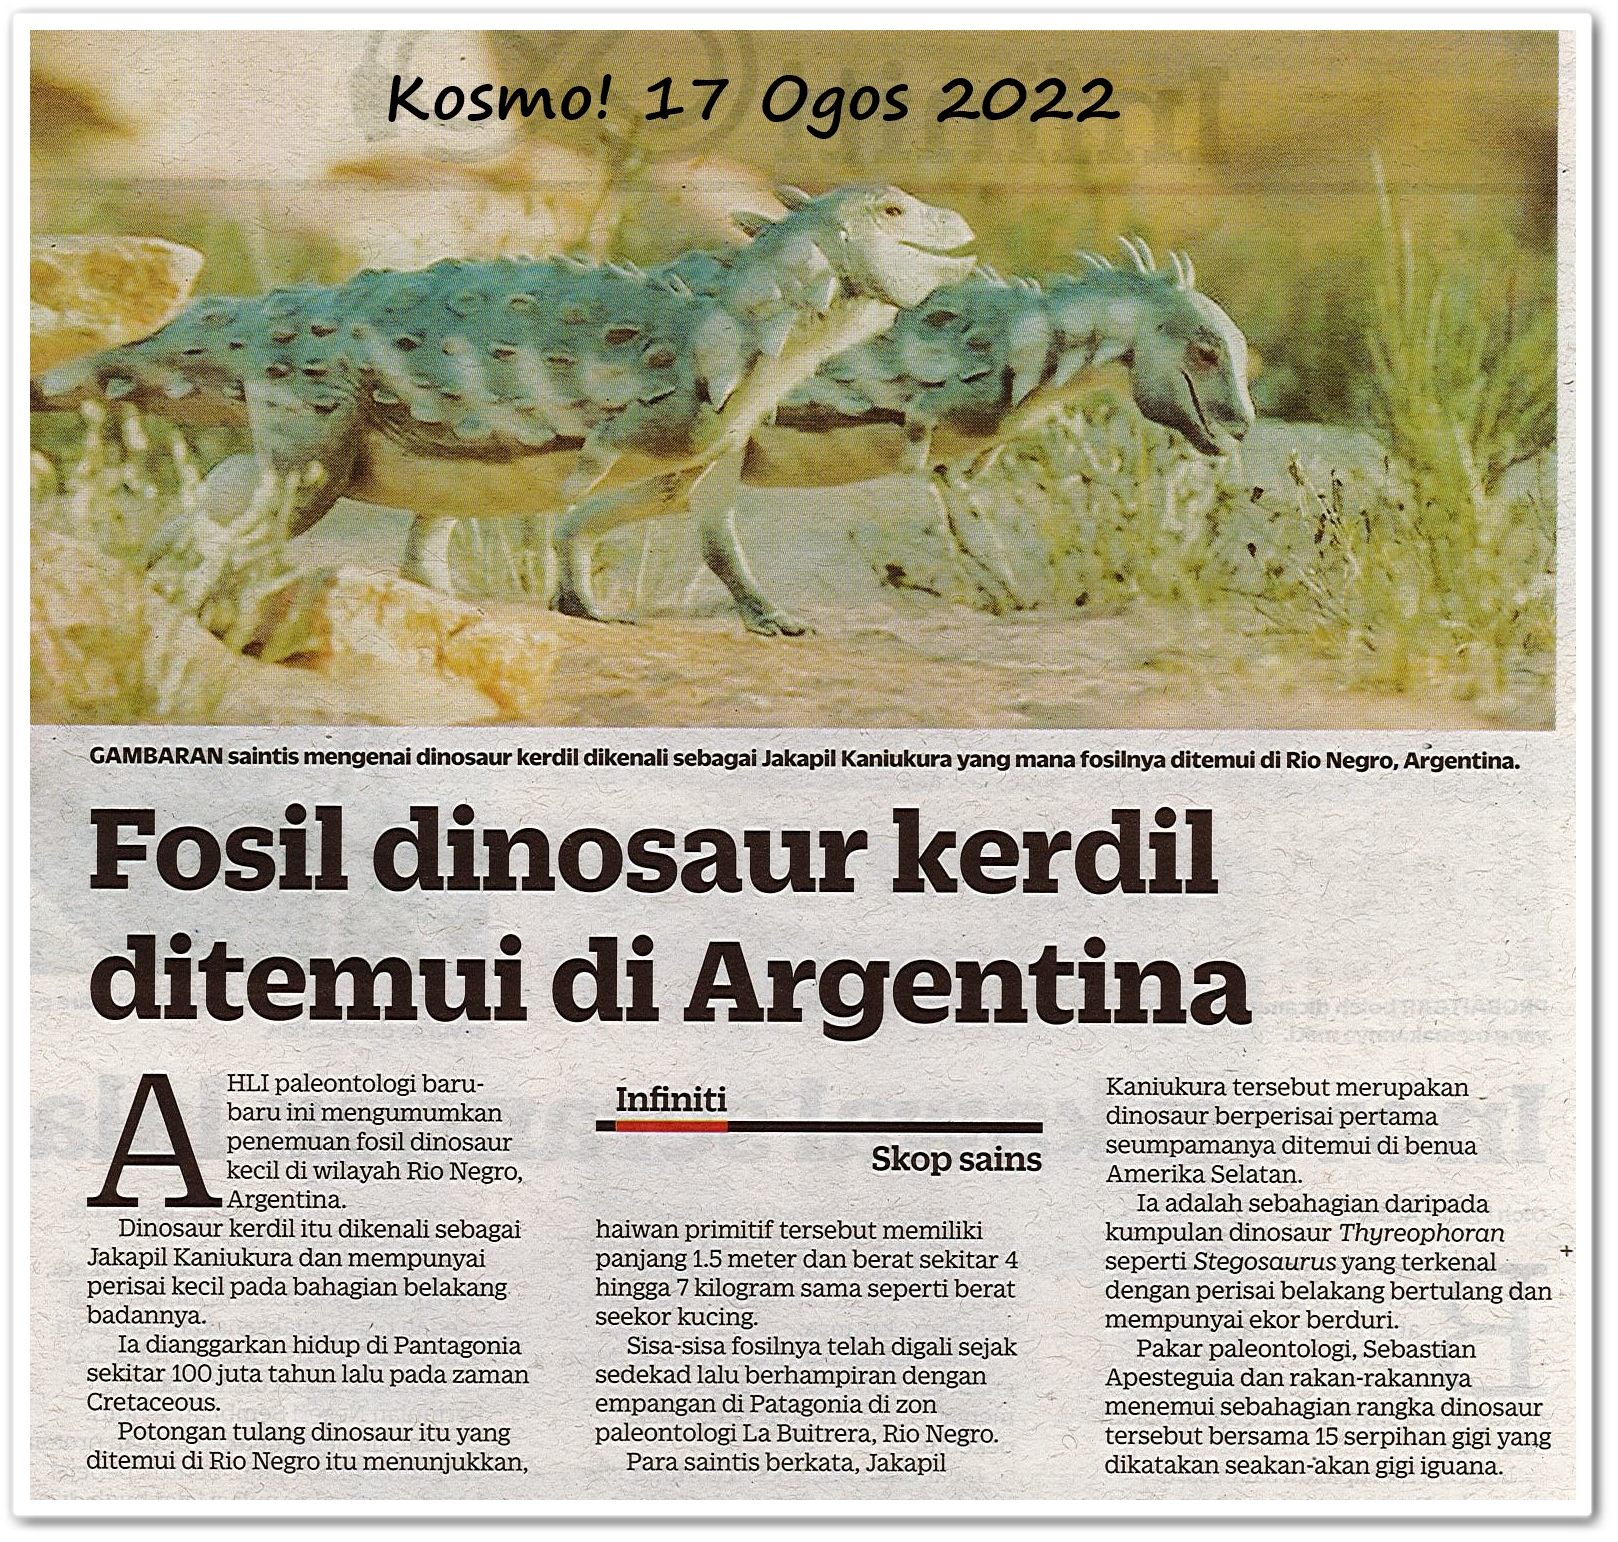 Fosil dinosaur kerdil ditemui di Argentina - Keratan akhbar Kosmo! 17 Ogos 2022